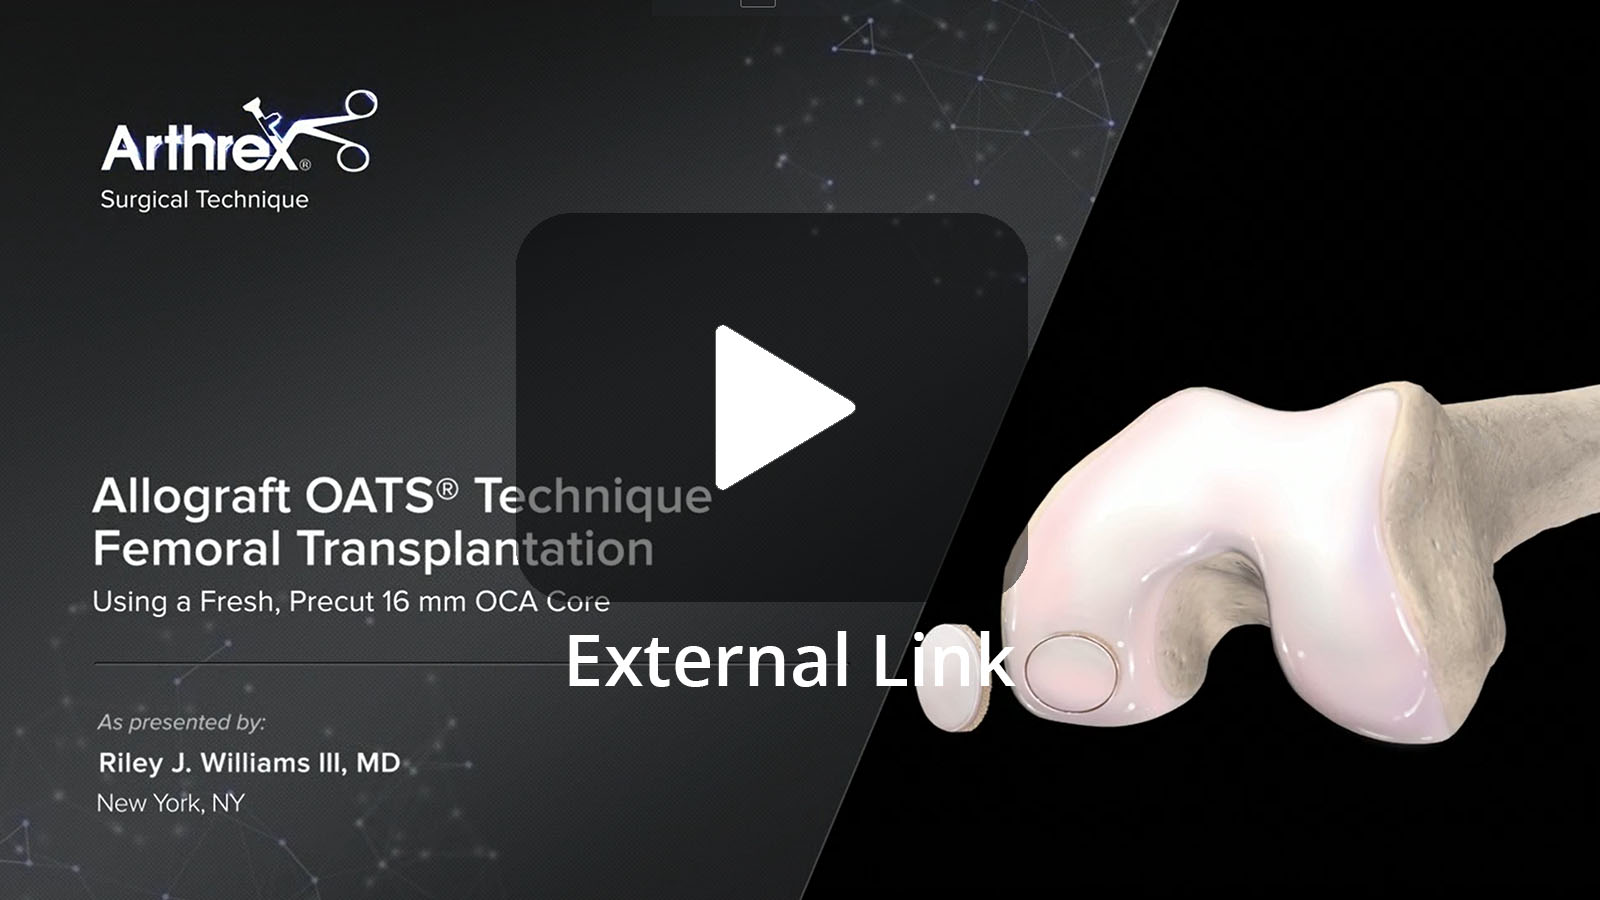 Allograft OATS® Technique Femoral Transplantation Using a Precut 16 mm OCA Core (External Link)